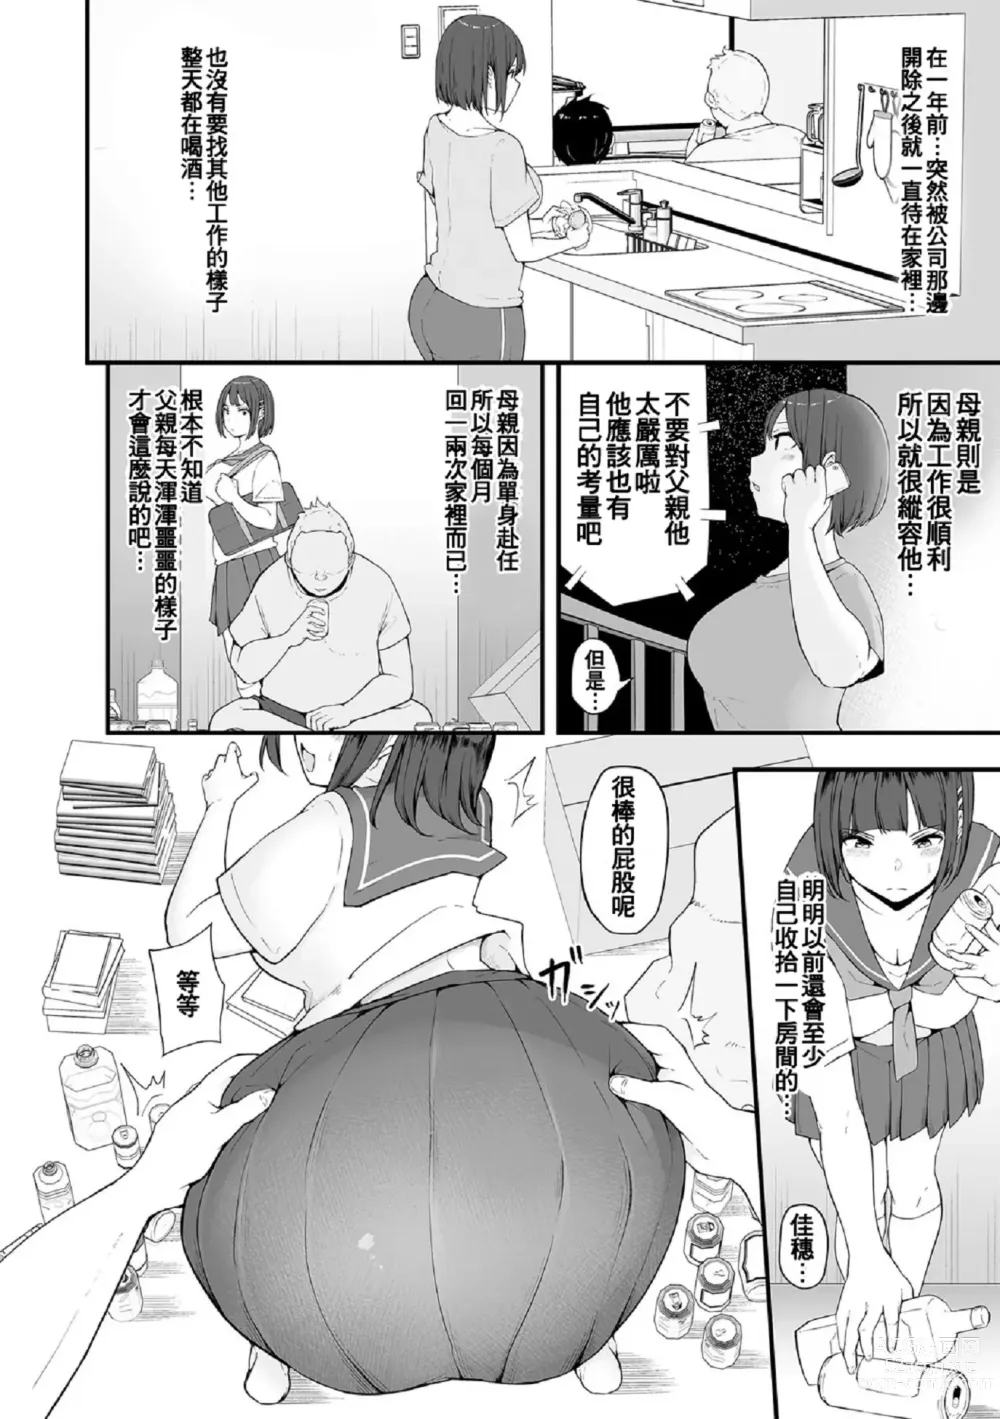 Page 5 of manga Honou ni wa Katenakatta 1